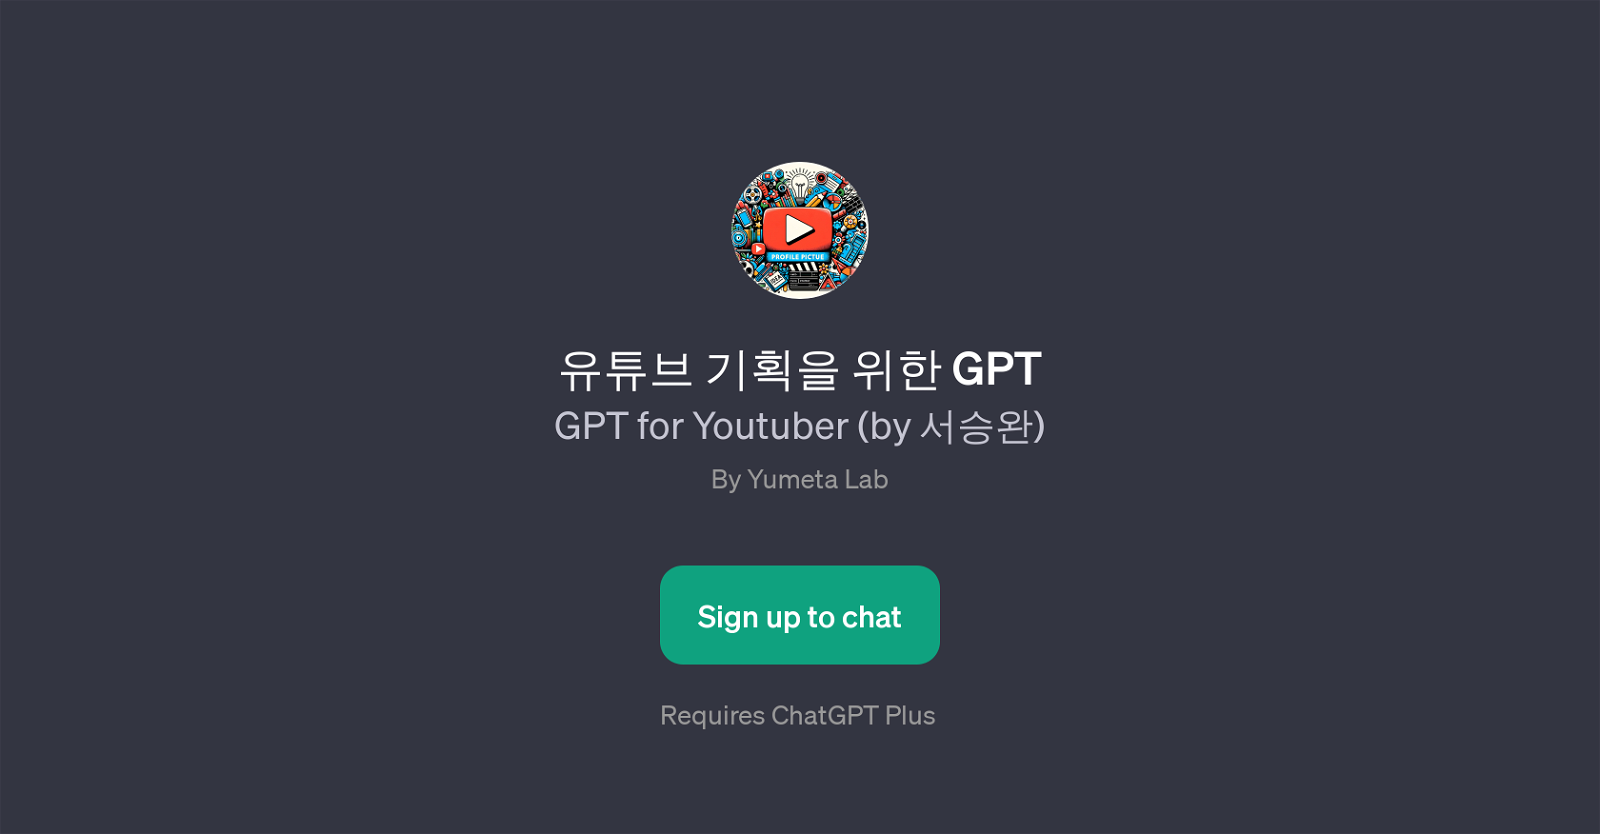 GPT for Youtuber website